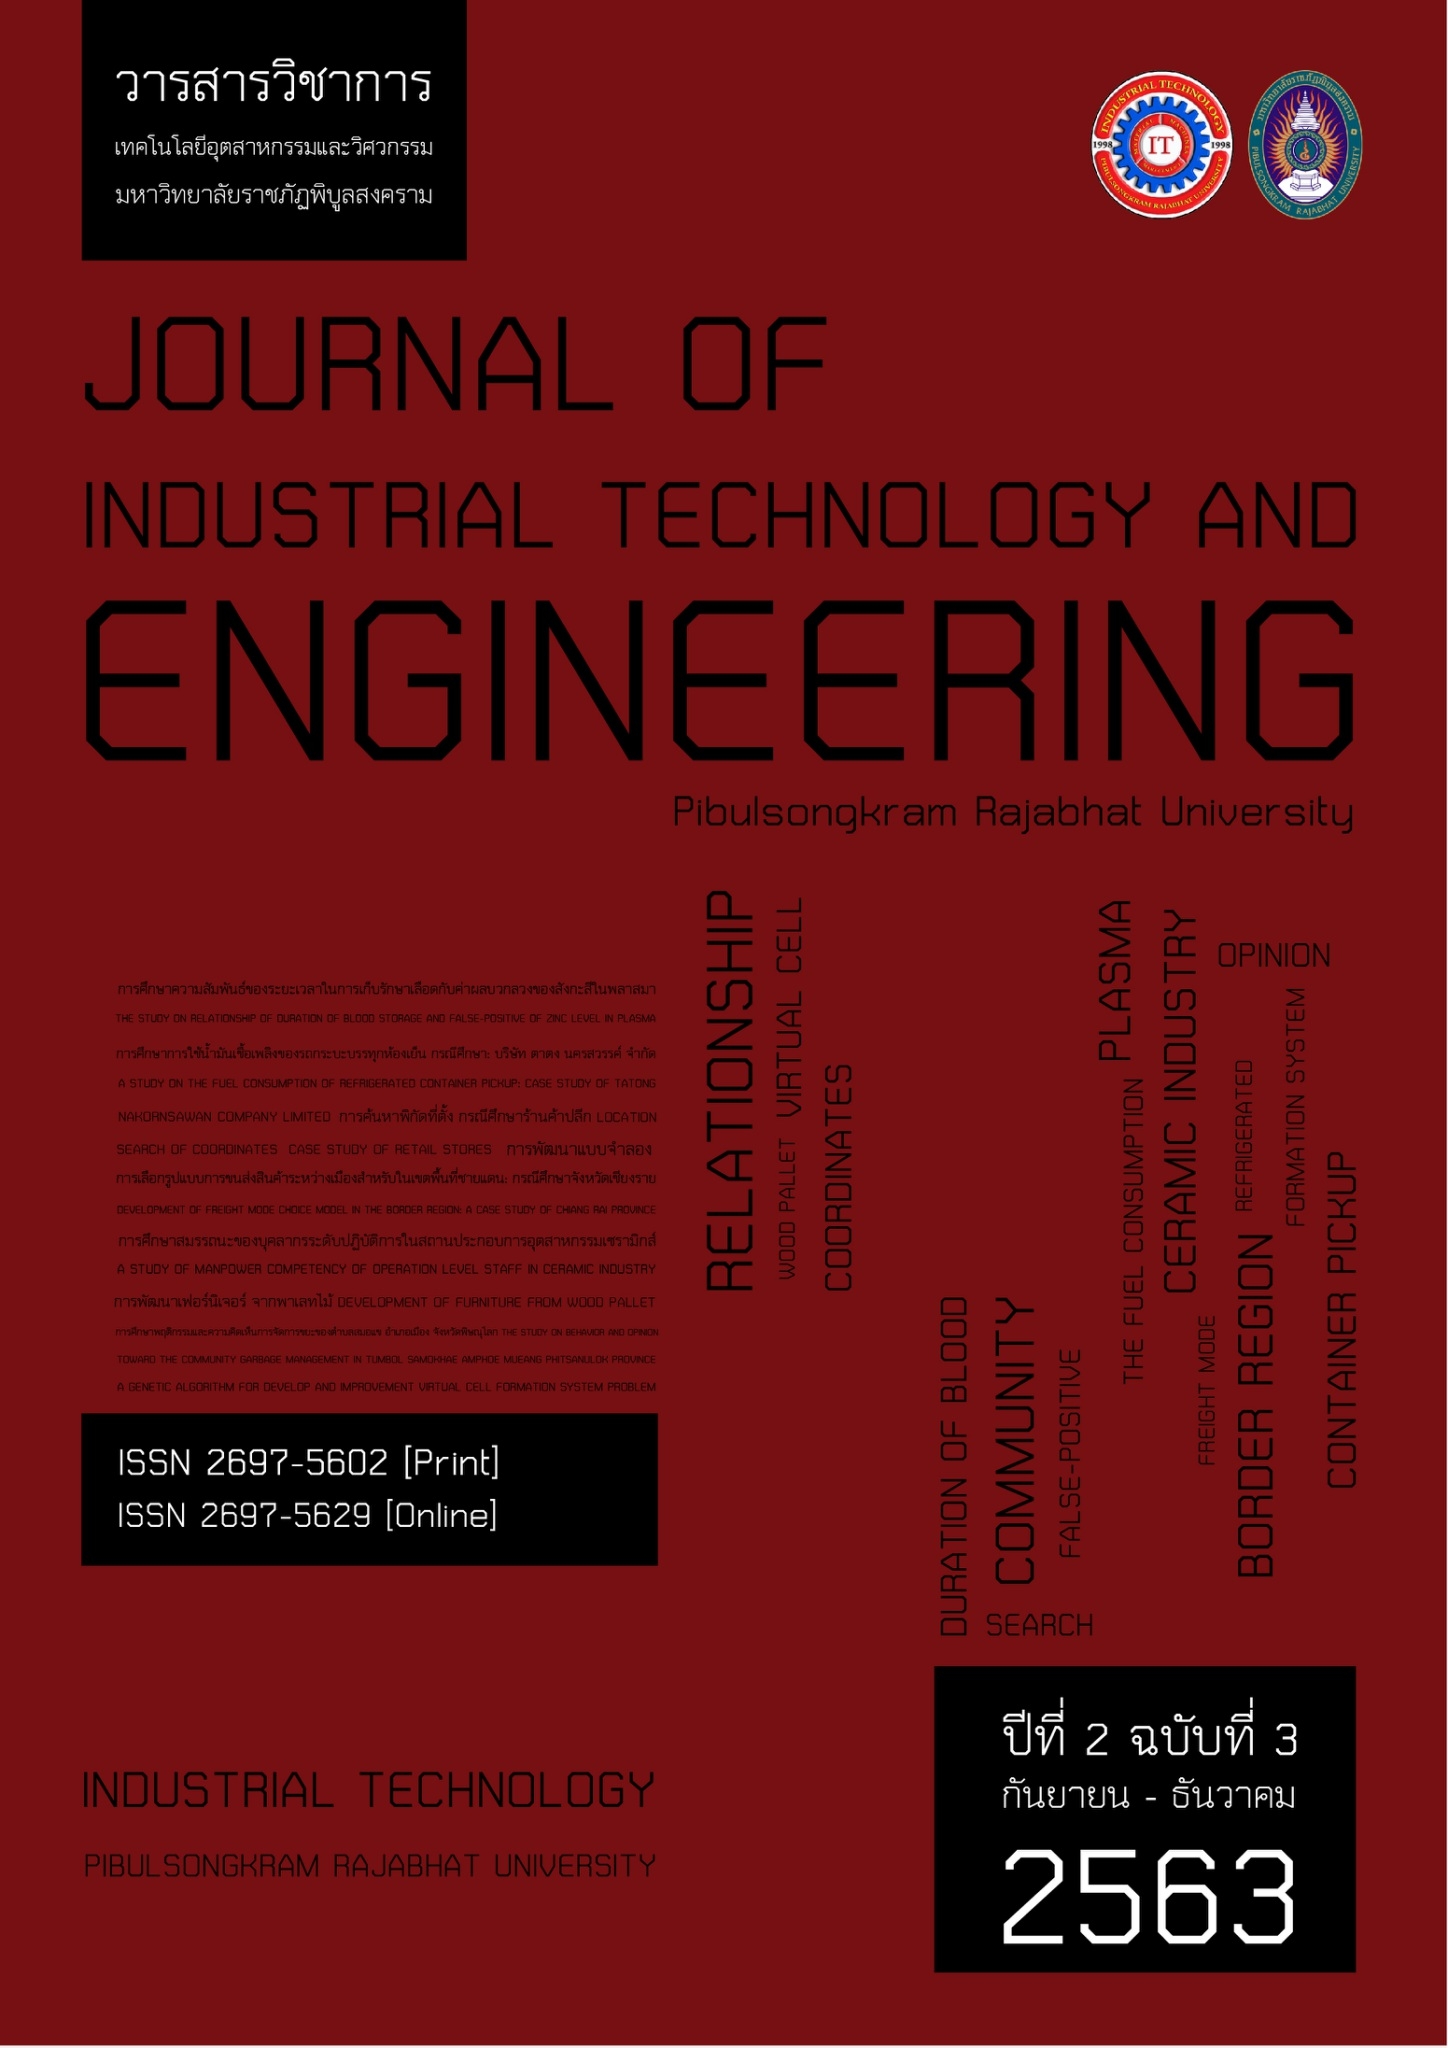 					ดู ปีที่ 2 ฉบับที่ 3 (2020): September 2020 - December 2020 (PSRU Journal of Industrial Technology and Engineering)
				